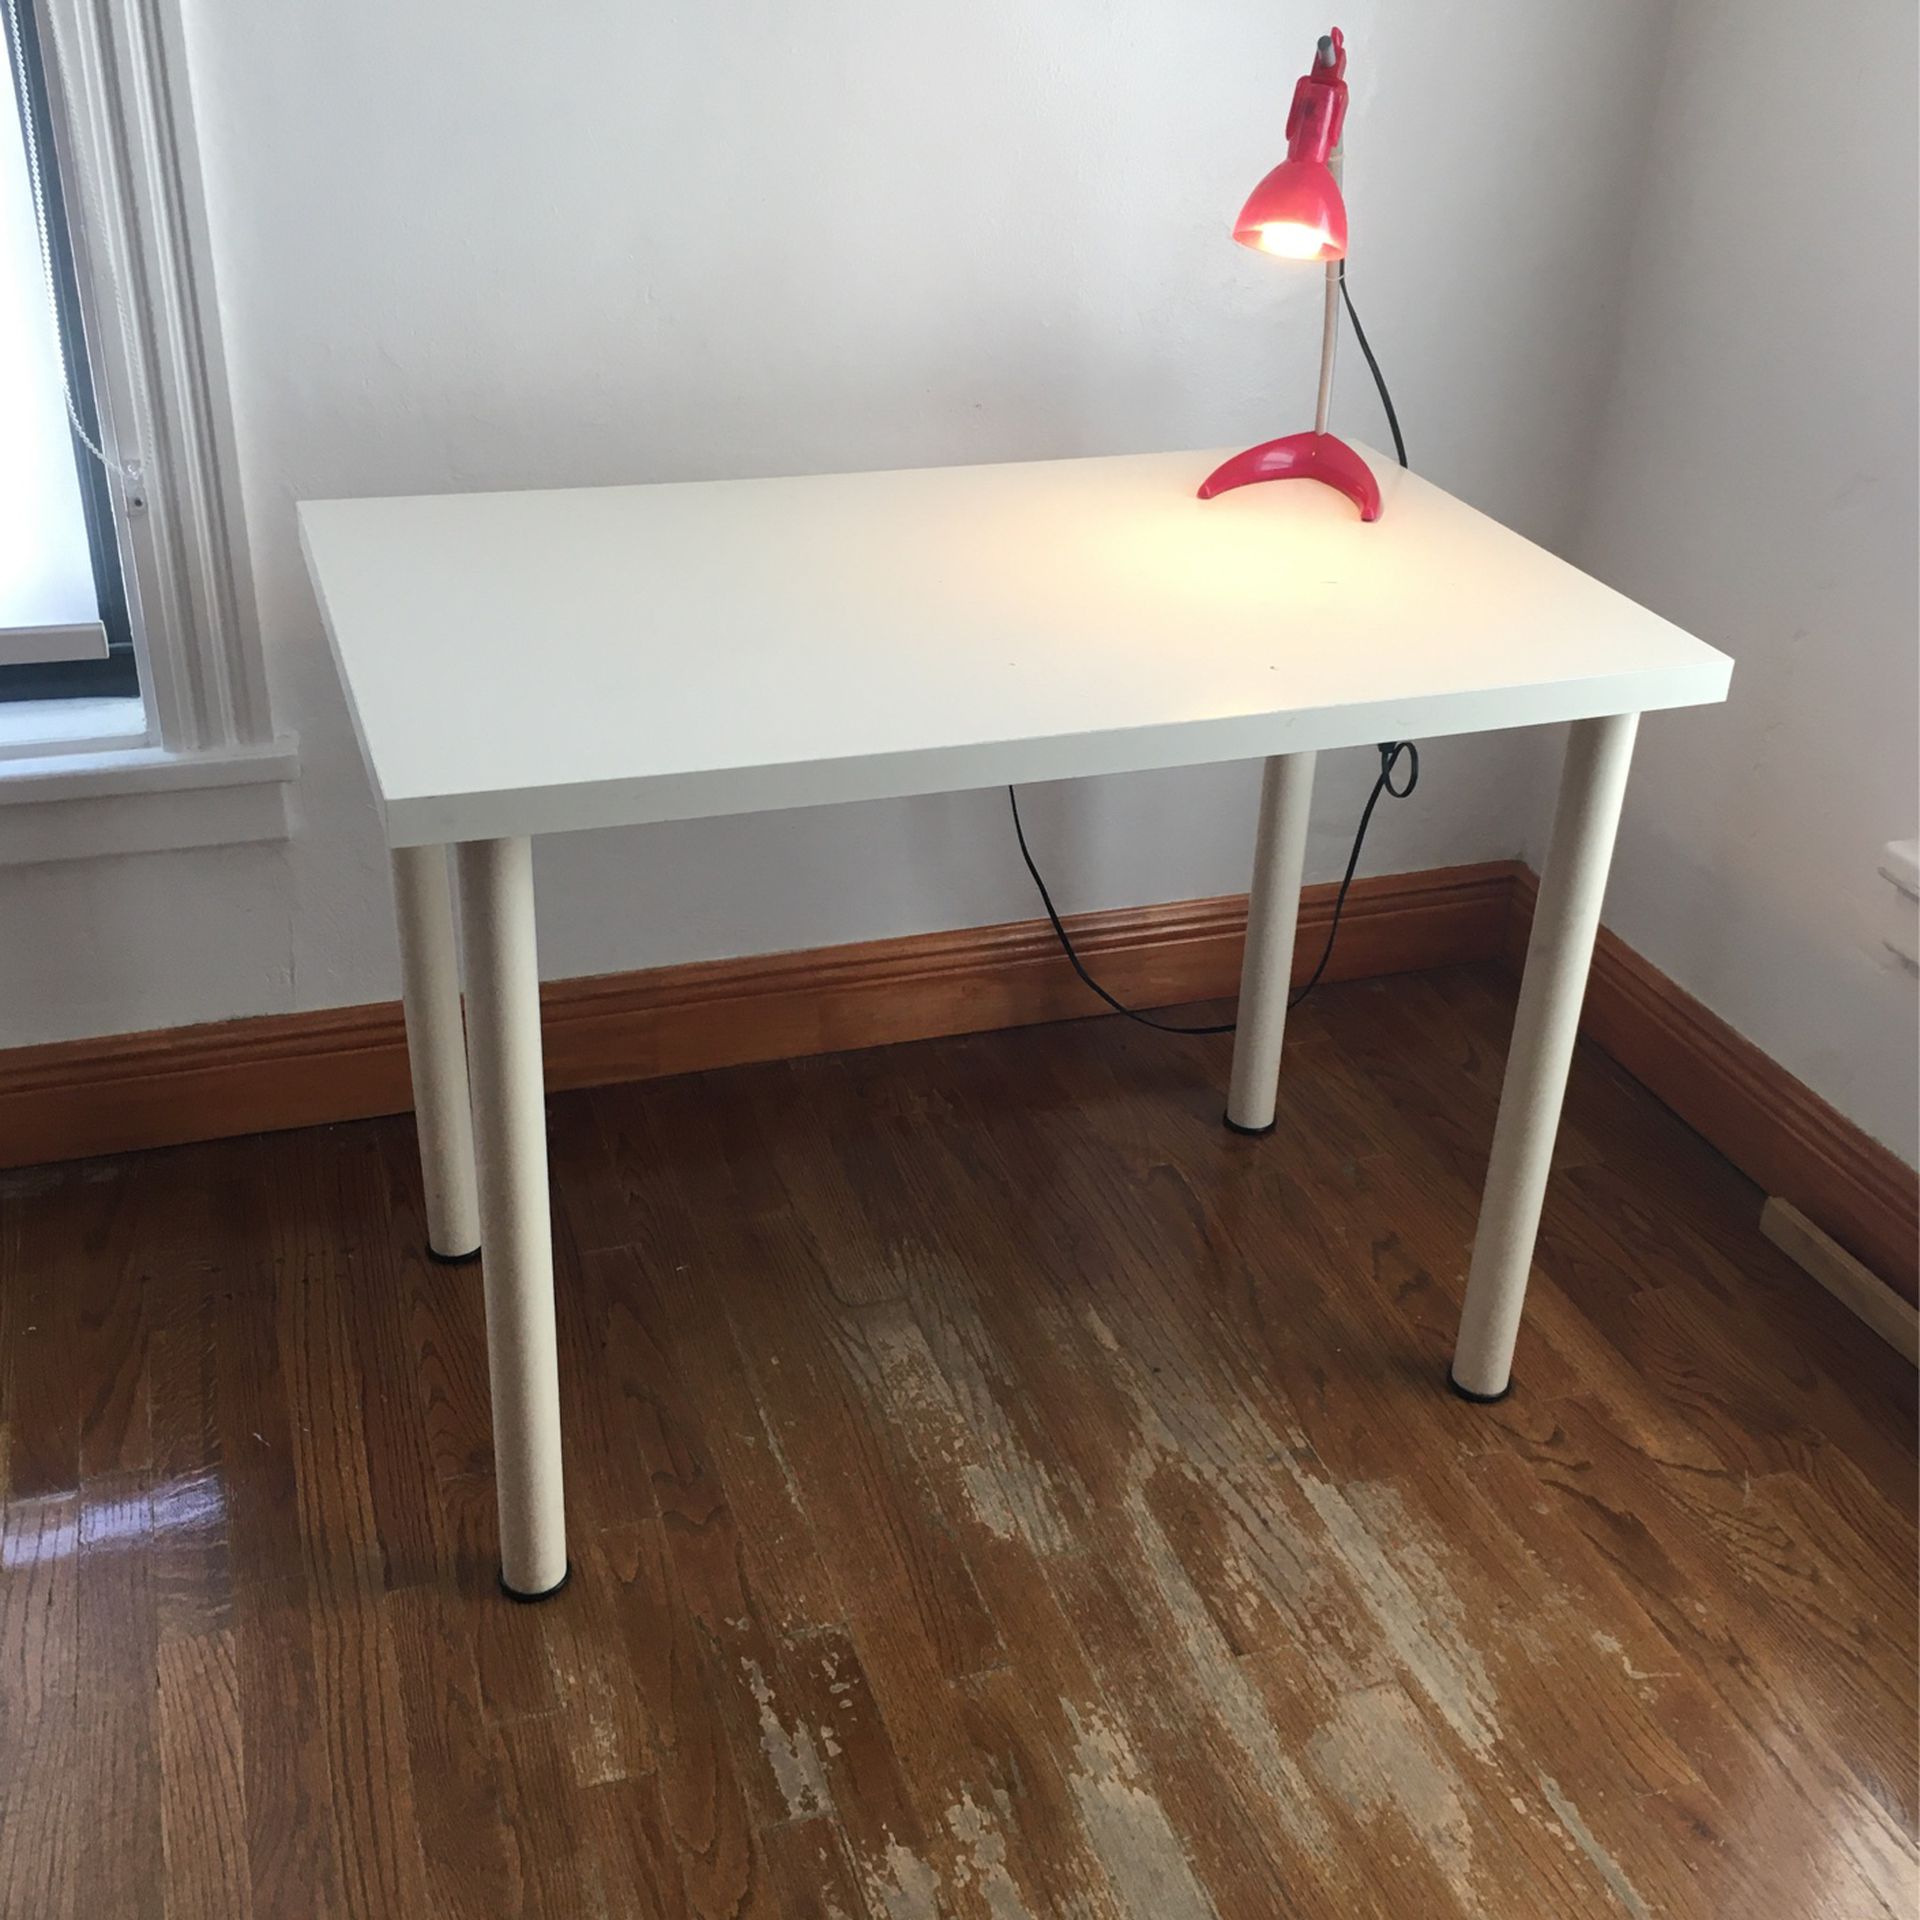 2 Work Desks/Tables + 2 lamps Bonus. 